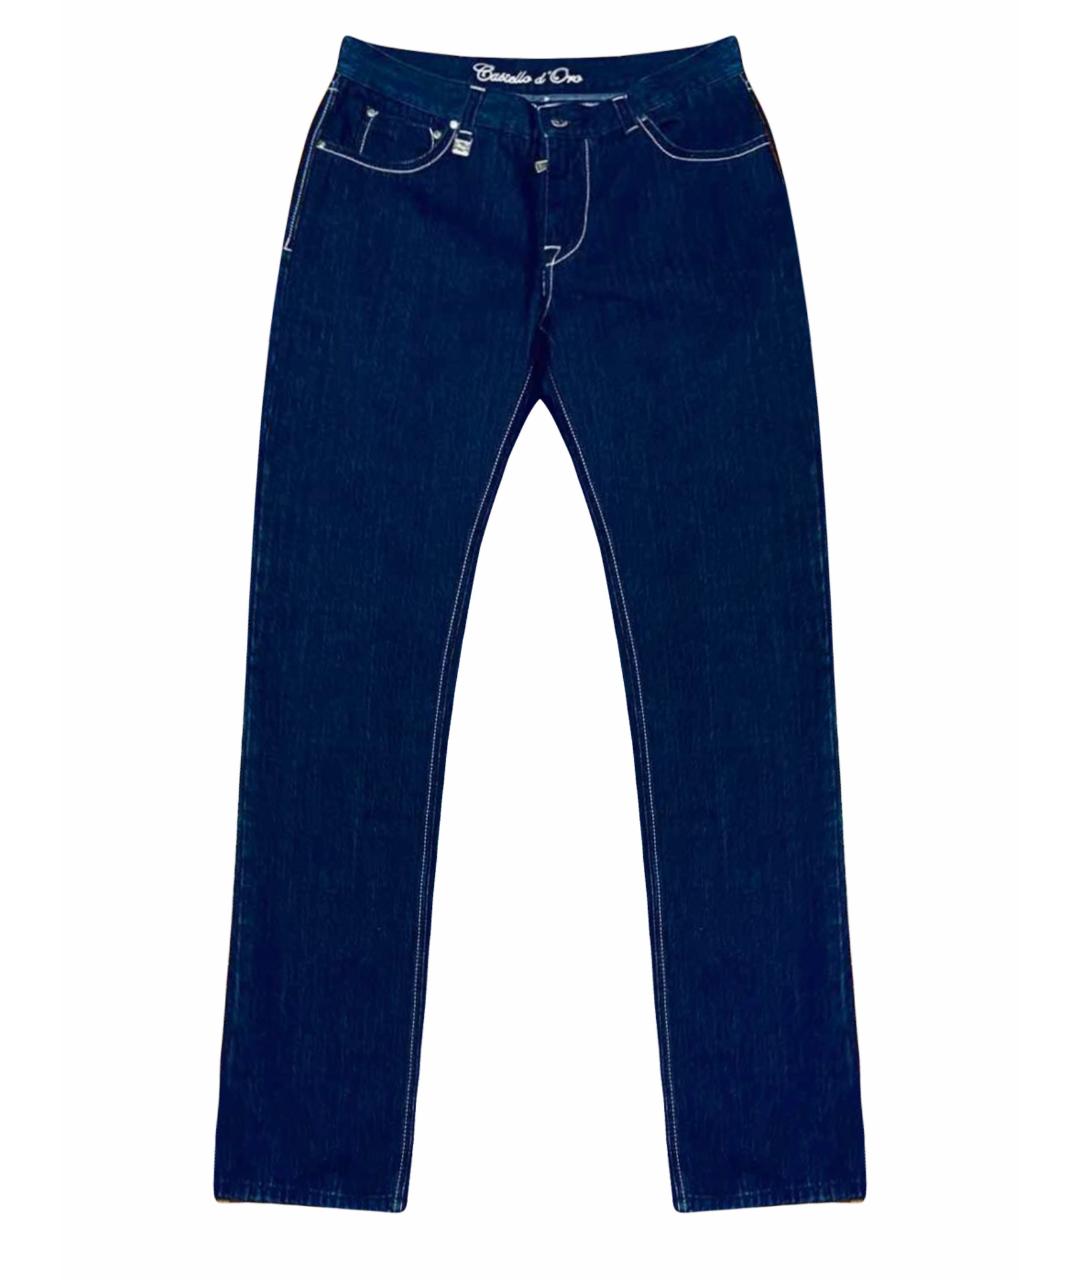 CASTELLO D'ORO Темно-синие хлопковые прямые джинсы, фото 1